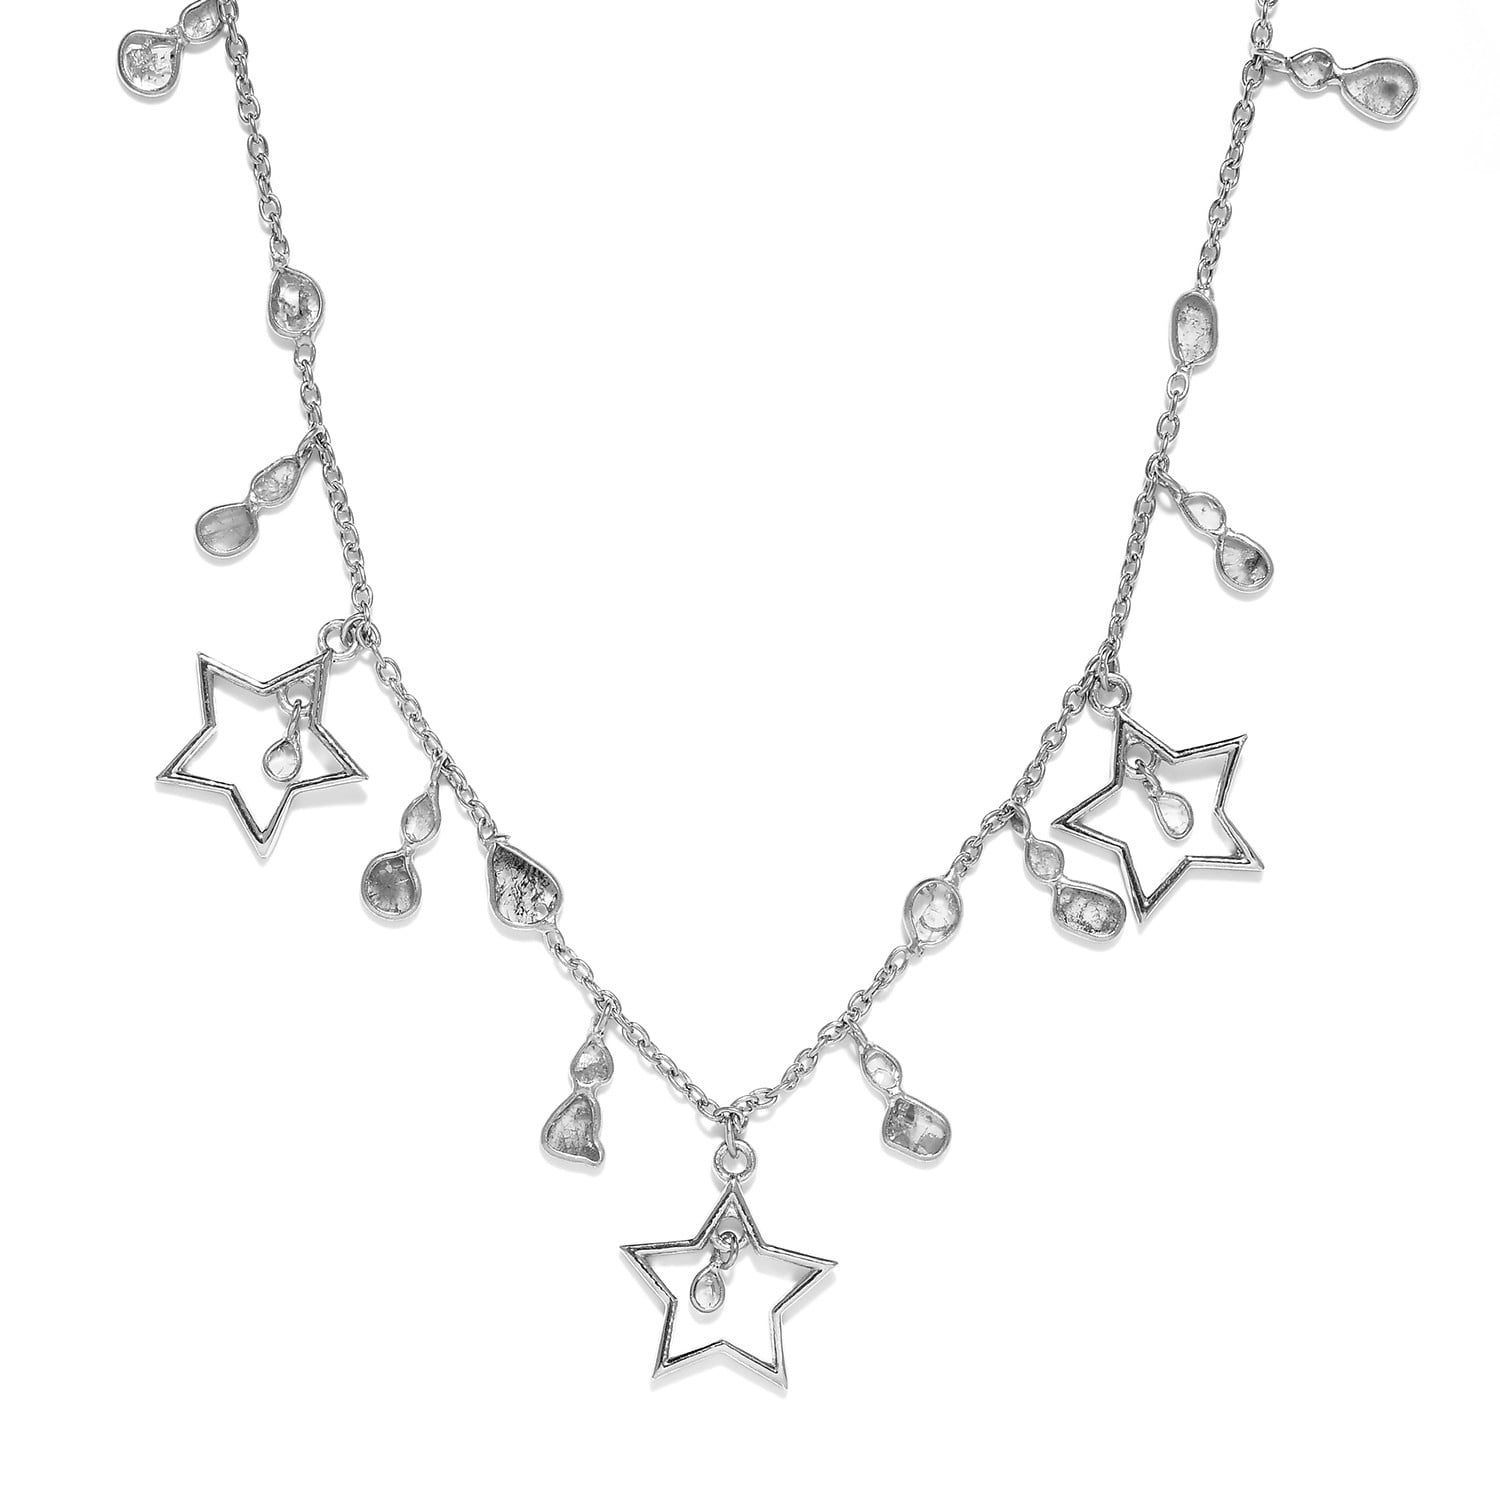 Bridal Jewellery Star 925 Sterling Silver Plain Earrings For Women's Best Friends Gift